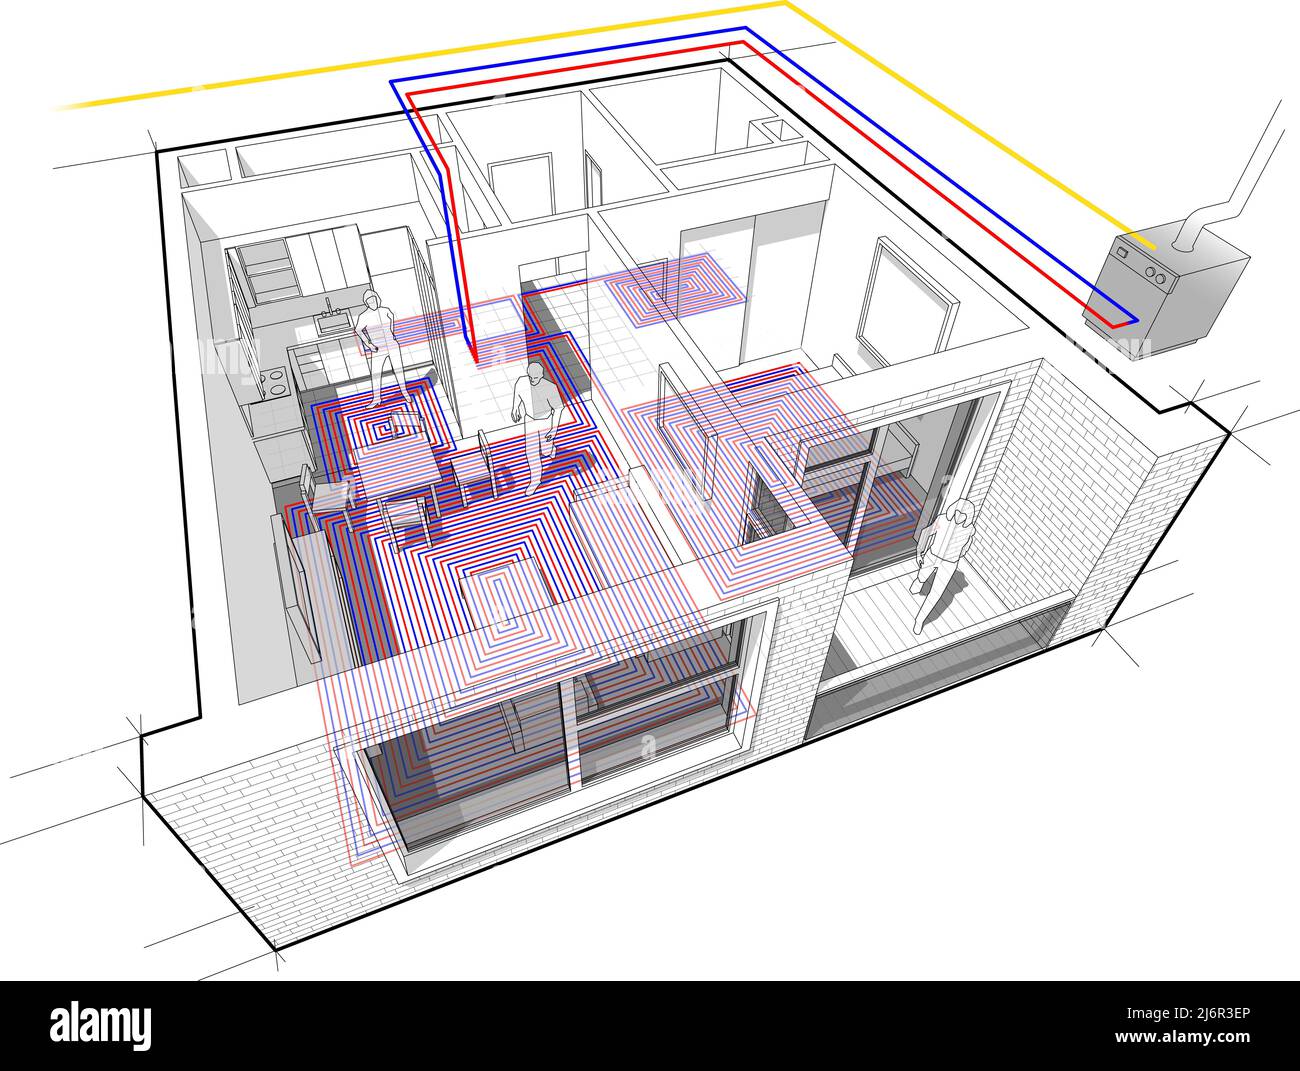 Wohnung komplett mit Warmwasser-Fußbodenheizung und Gas-Wasserkocher als Energiequelle für die Heizung ausgestattet Stockfoto